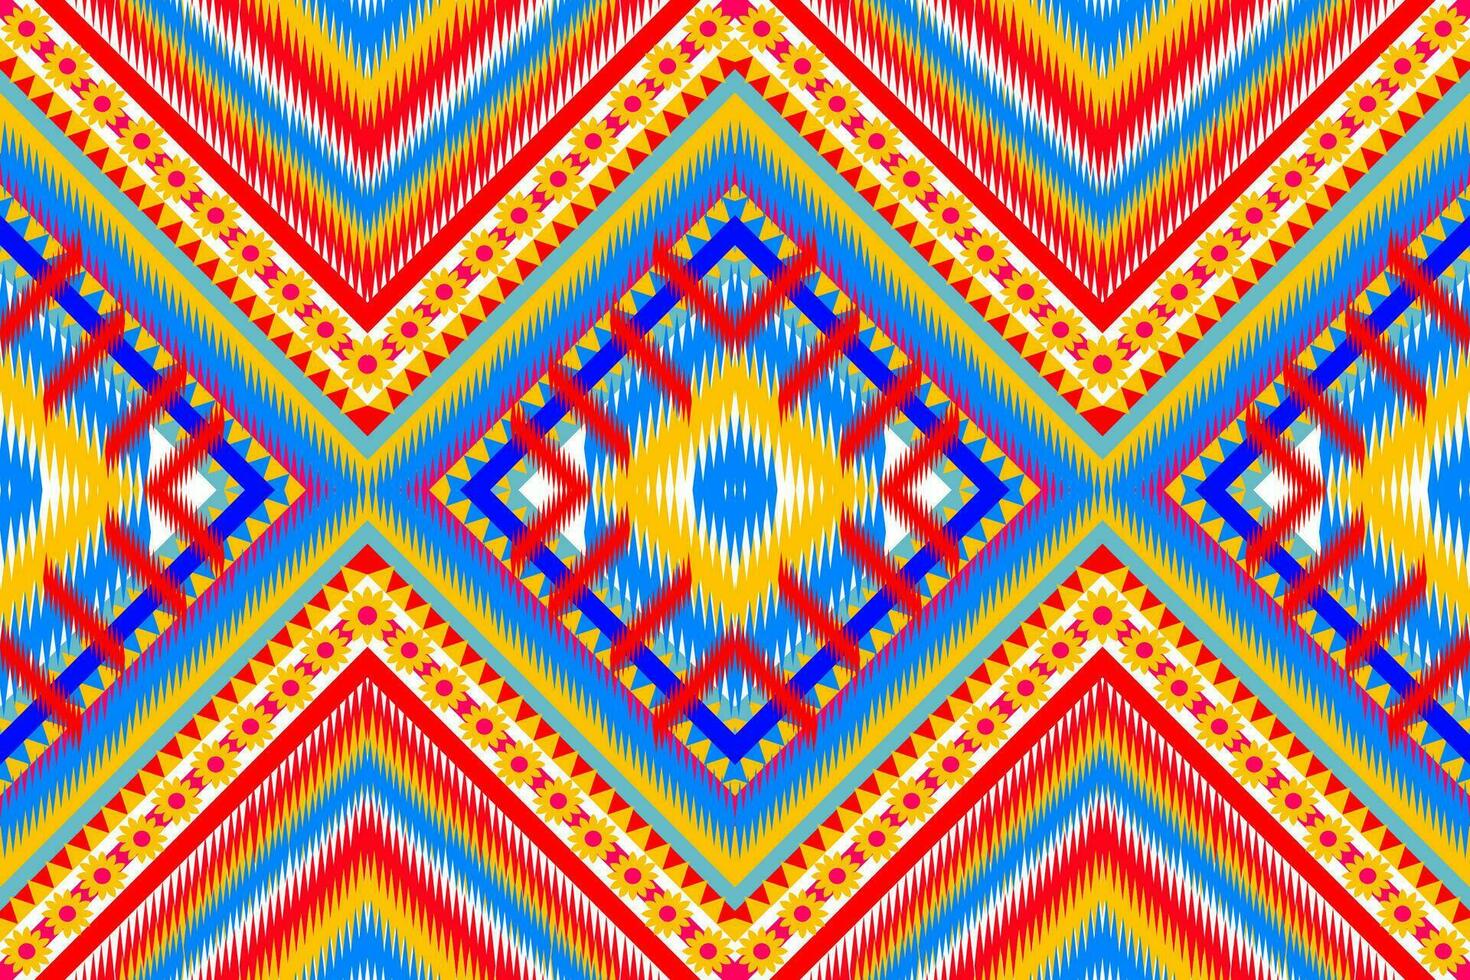 nahtlos Hand gezeichnet Chevron Muster mit aztekisch ethnisch und Stammes- Ornament. Vektor dunkel und hell Farben Boho Mode Illustration.